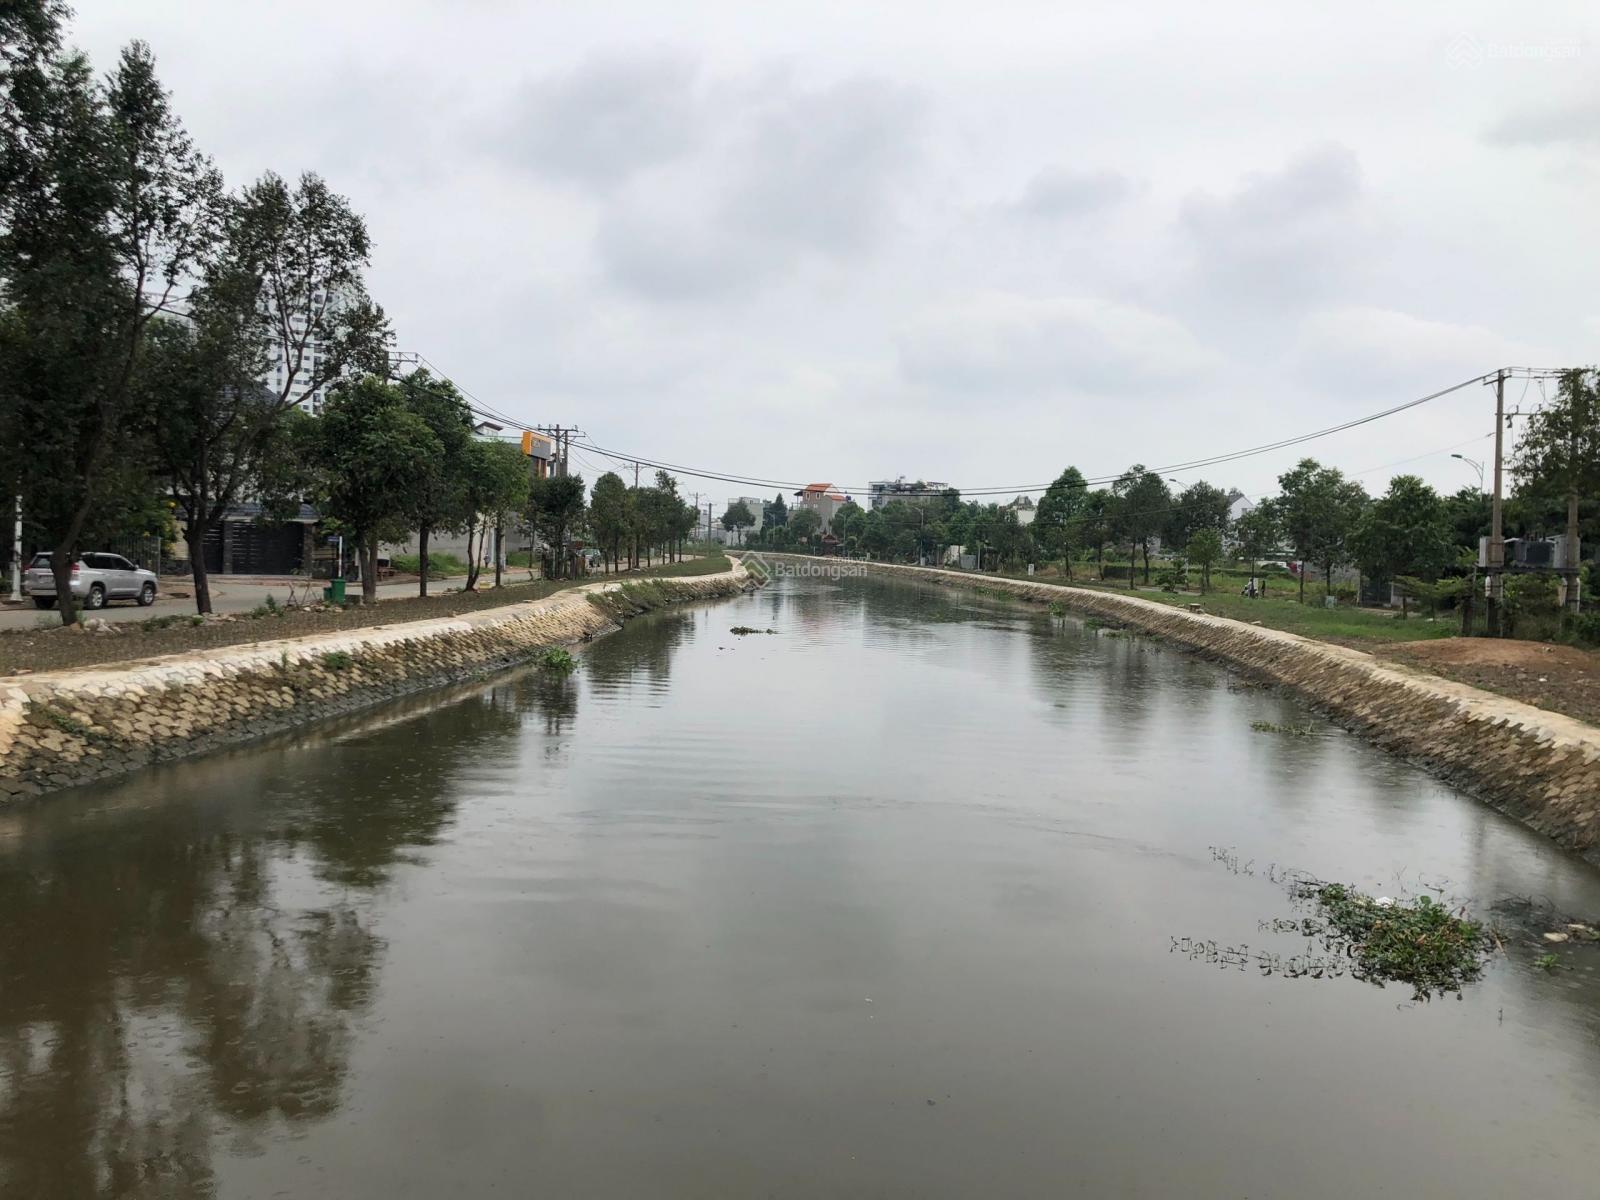 Chính chủ cần bán gấp đất mặt tiền sông Vĩnh Phú 1 - Khu dân trí đông đúc - giá chỉ 35,5 triệu/m2